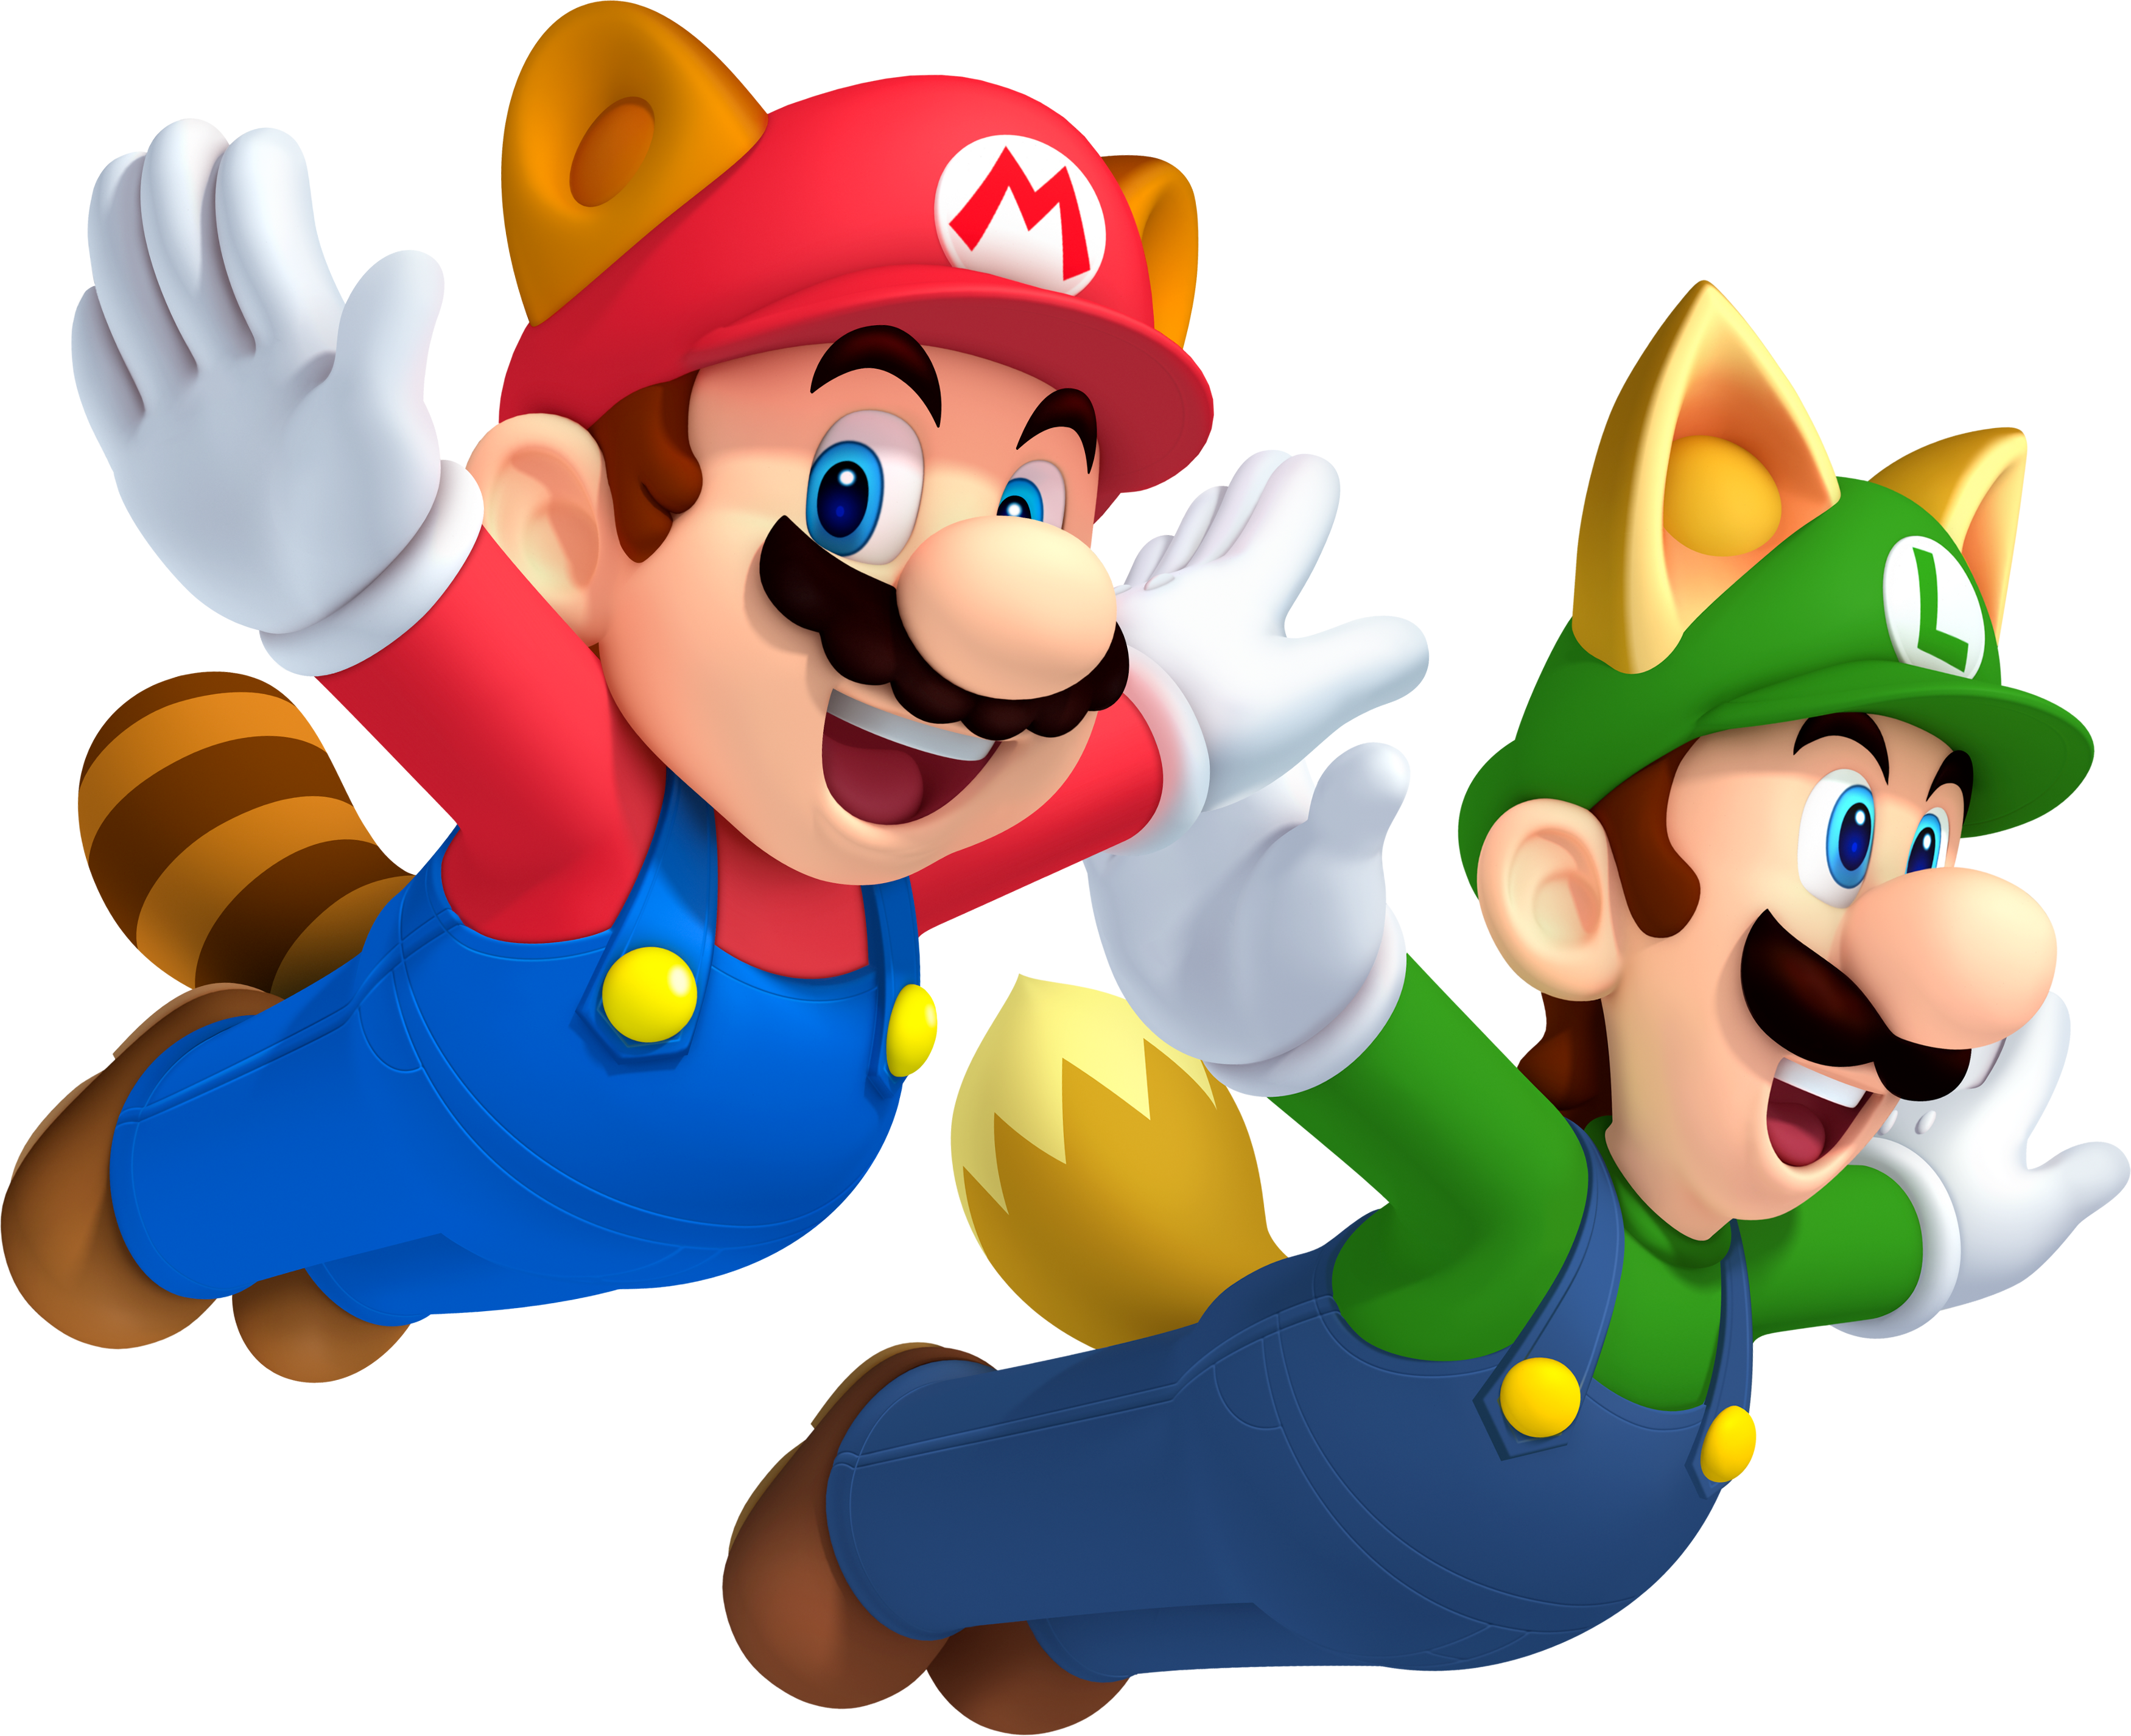 Mario bros theme. Нью супер Марио БРОС 2. Марио супер Марио. Марио и Луиджи. Mario Bros Луиджи.